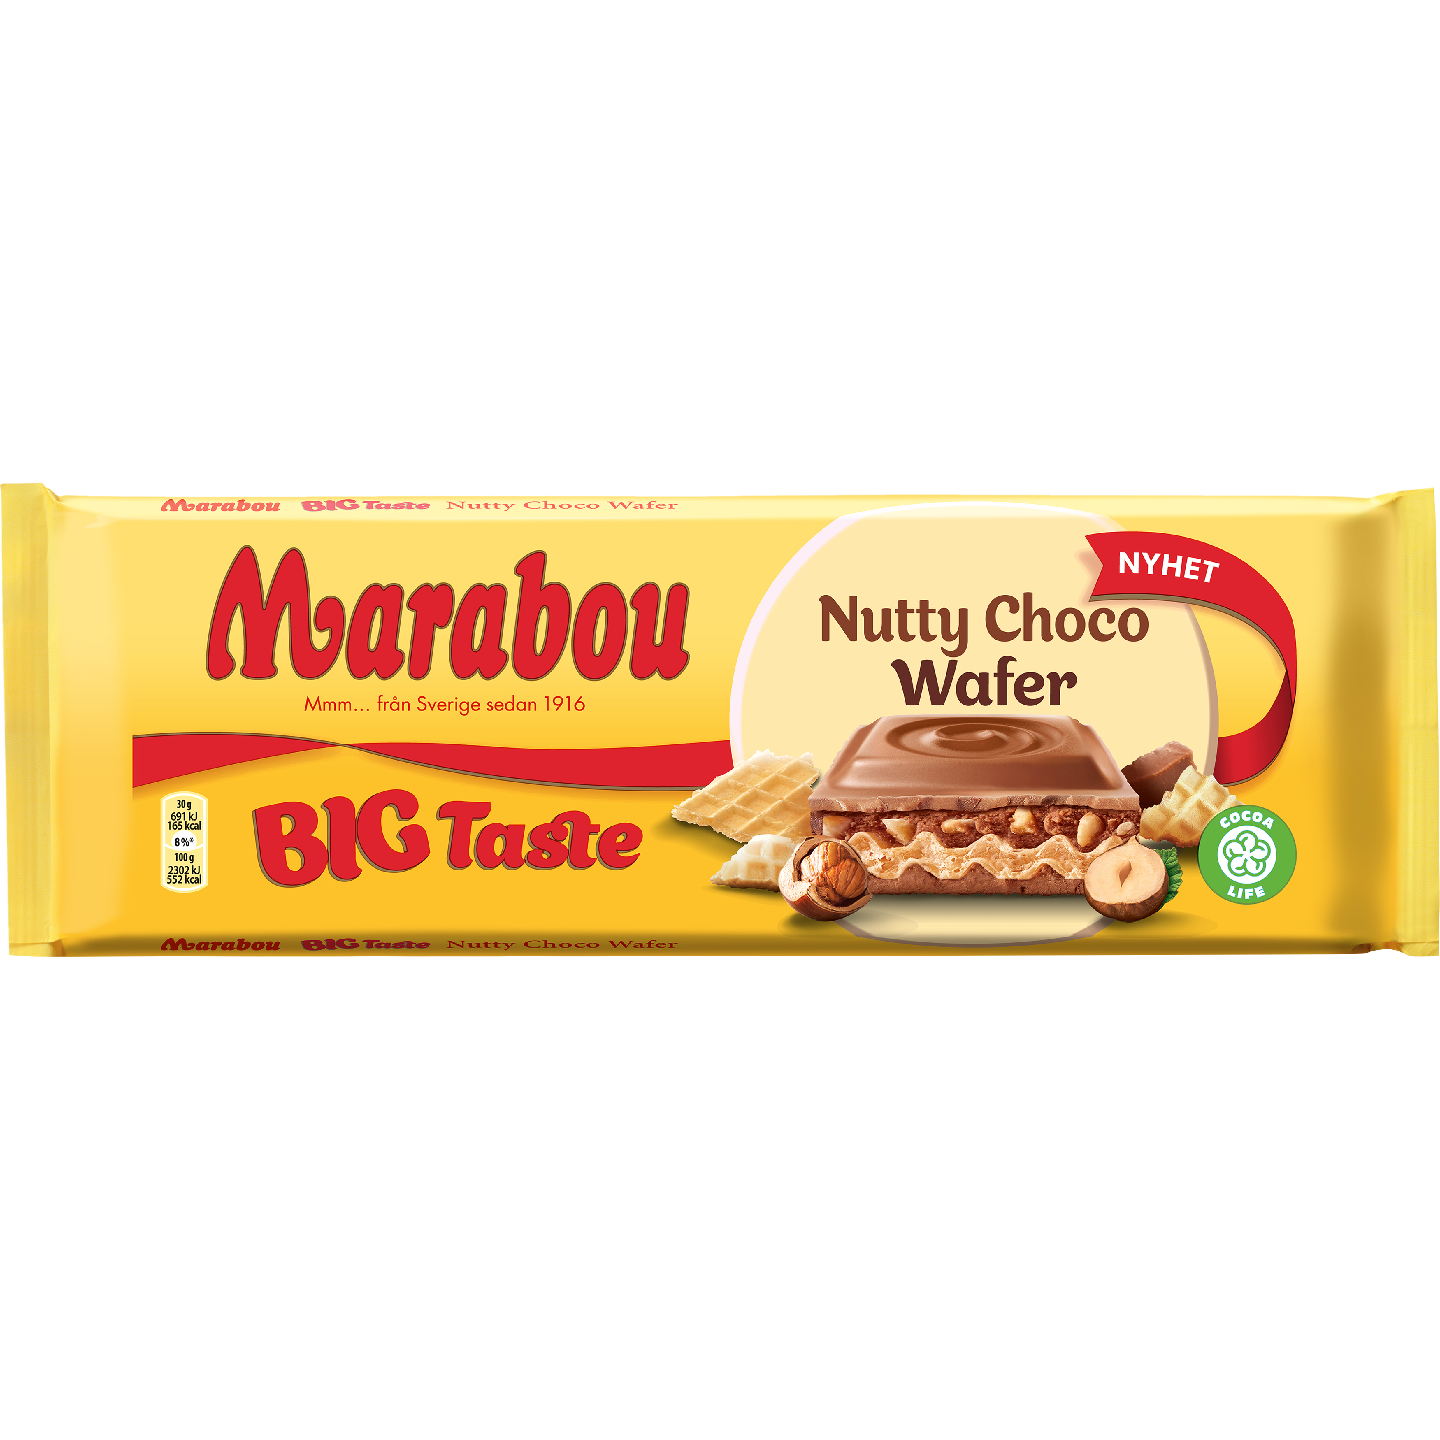 Marabou Big Taste Nutty Choco Wafer 270g